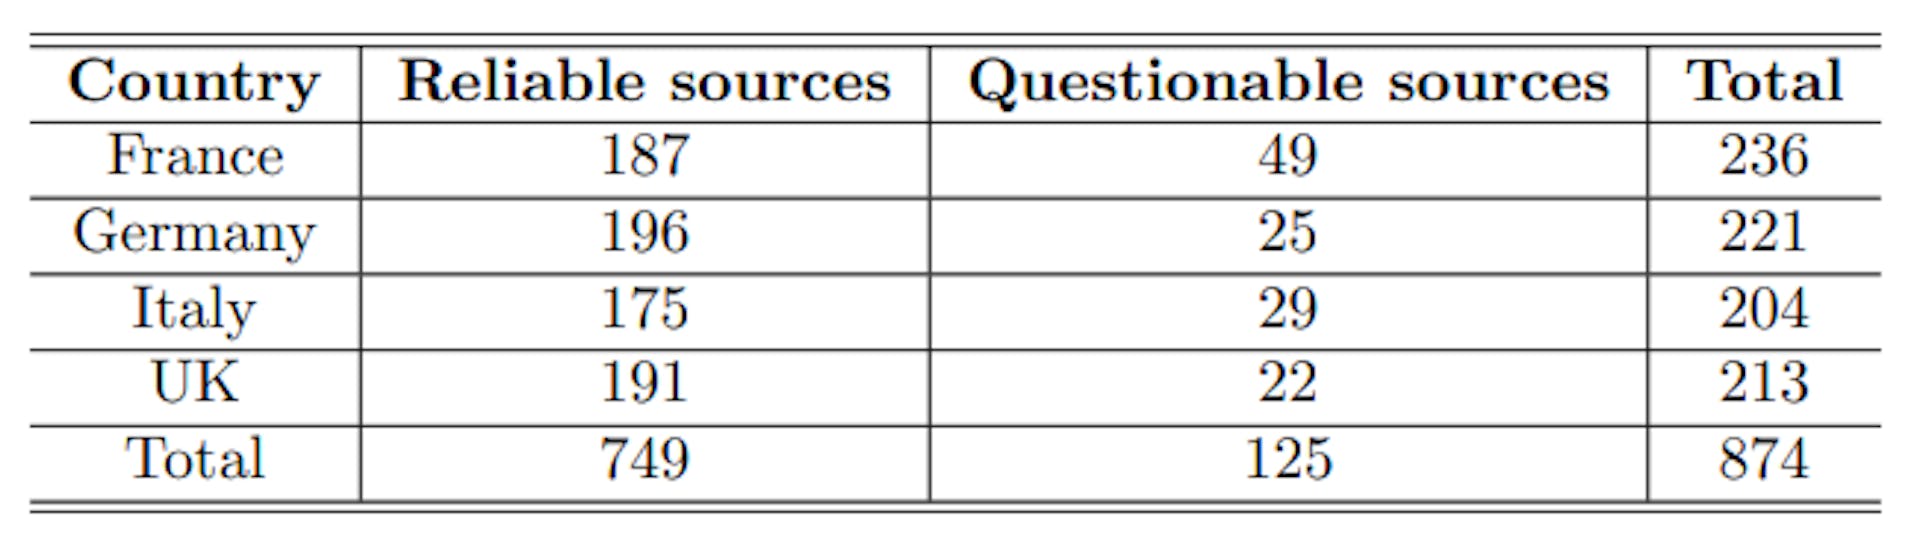 Tableau 1 : Répartition de l'ensemble de données des sources d'information de NewsGuard par pays et fiabilité